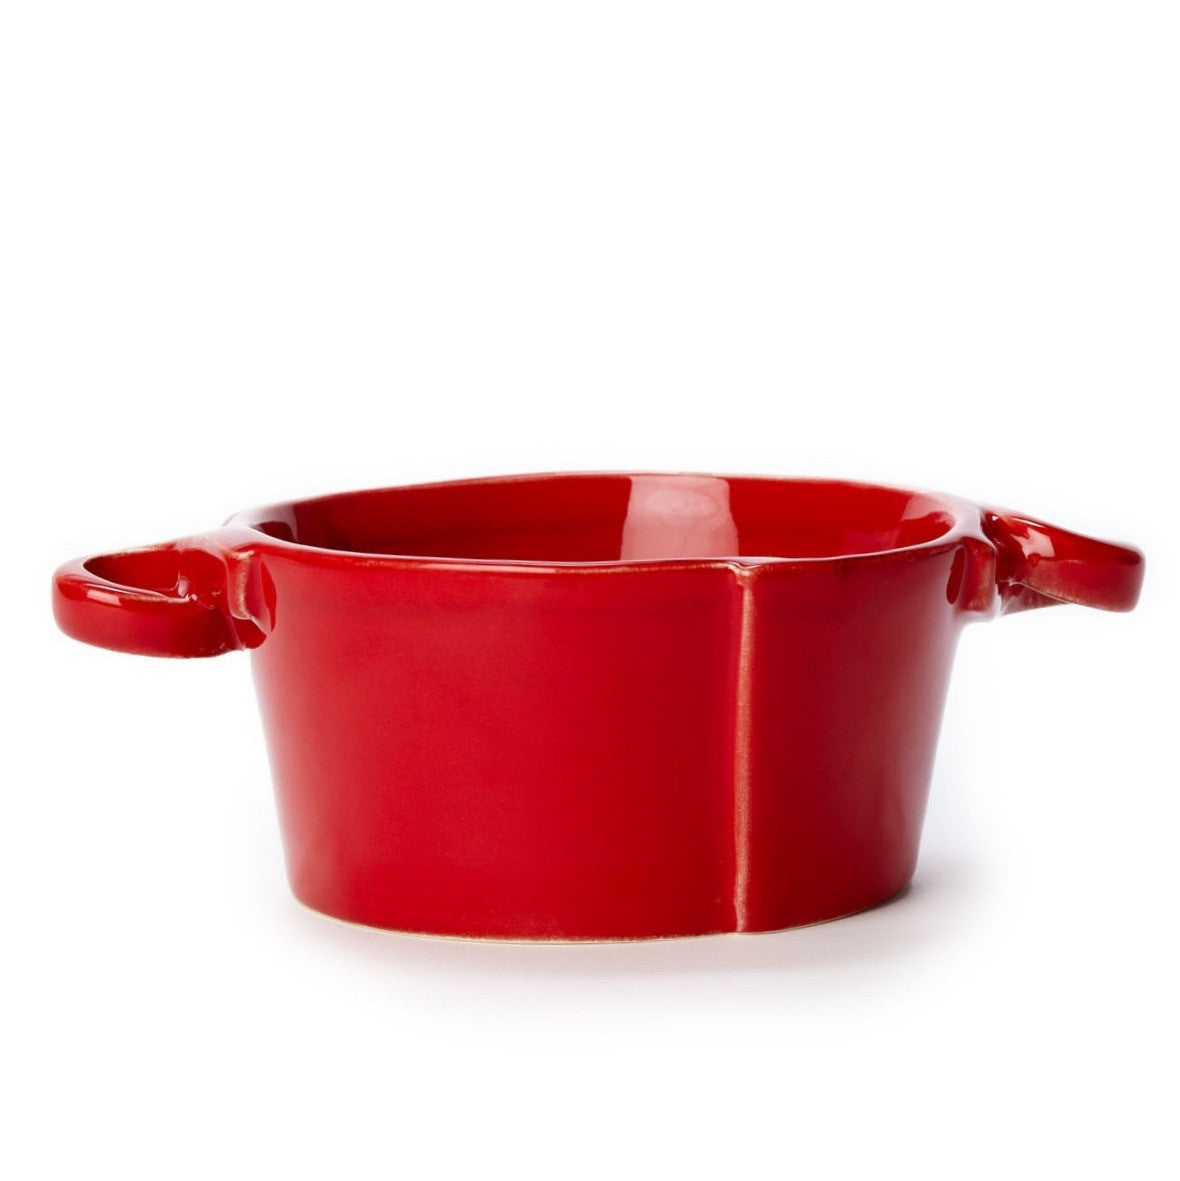 VIETRI: Lastra Red Small Handled Bowl - Artistica.com